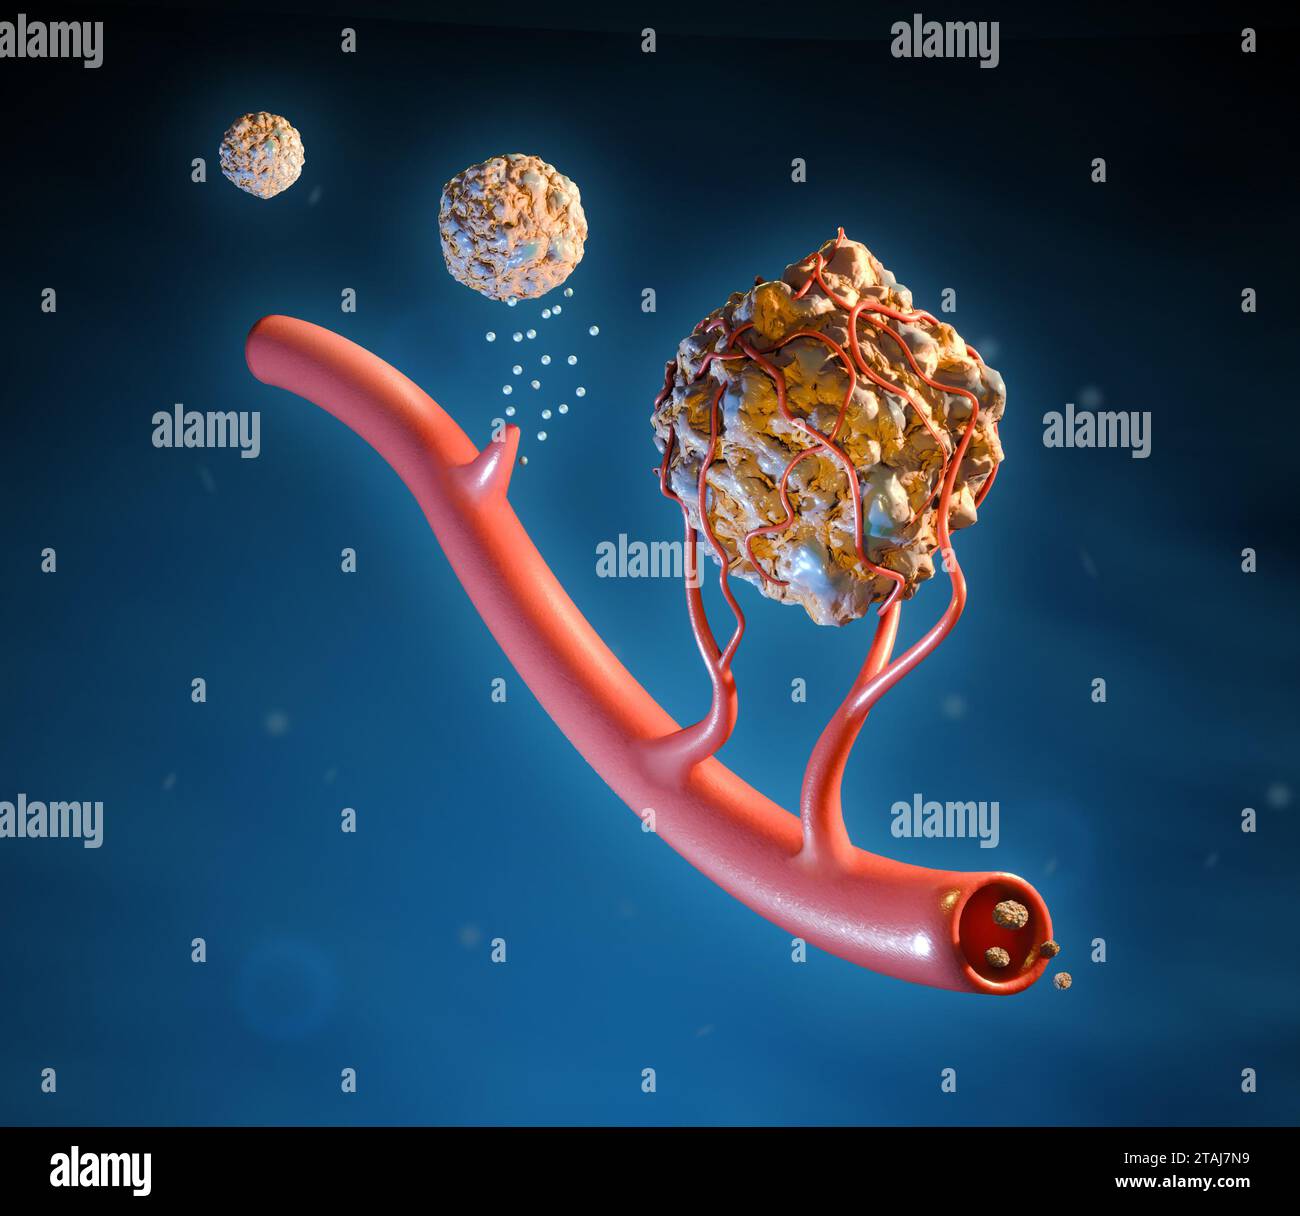 Cellule tumorali che usano l'angiogenesi per crescere e diffondersi attraverso il corpo. Illustrazione digitale, rendering 3D. Foto Stock